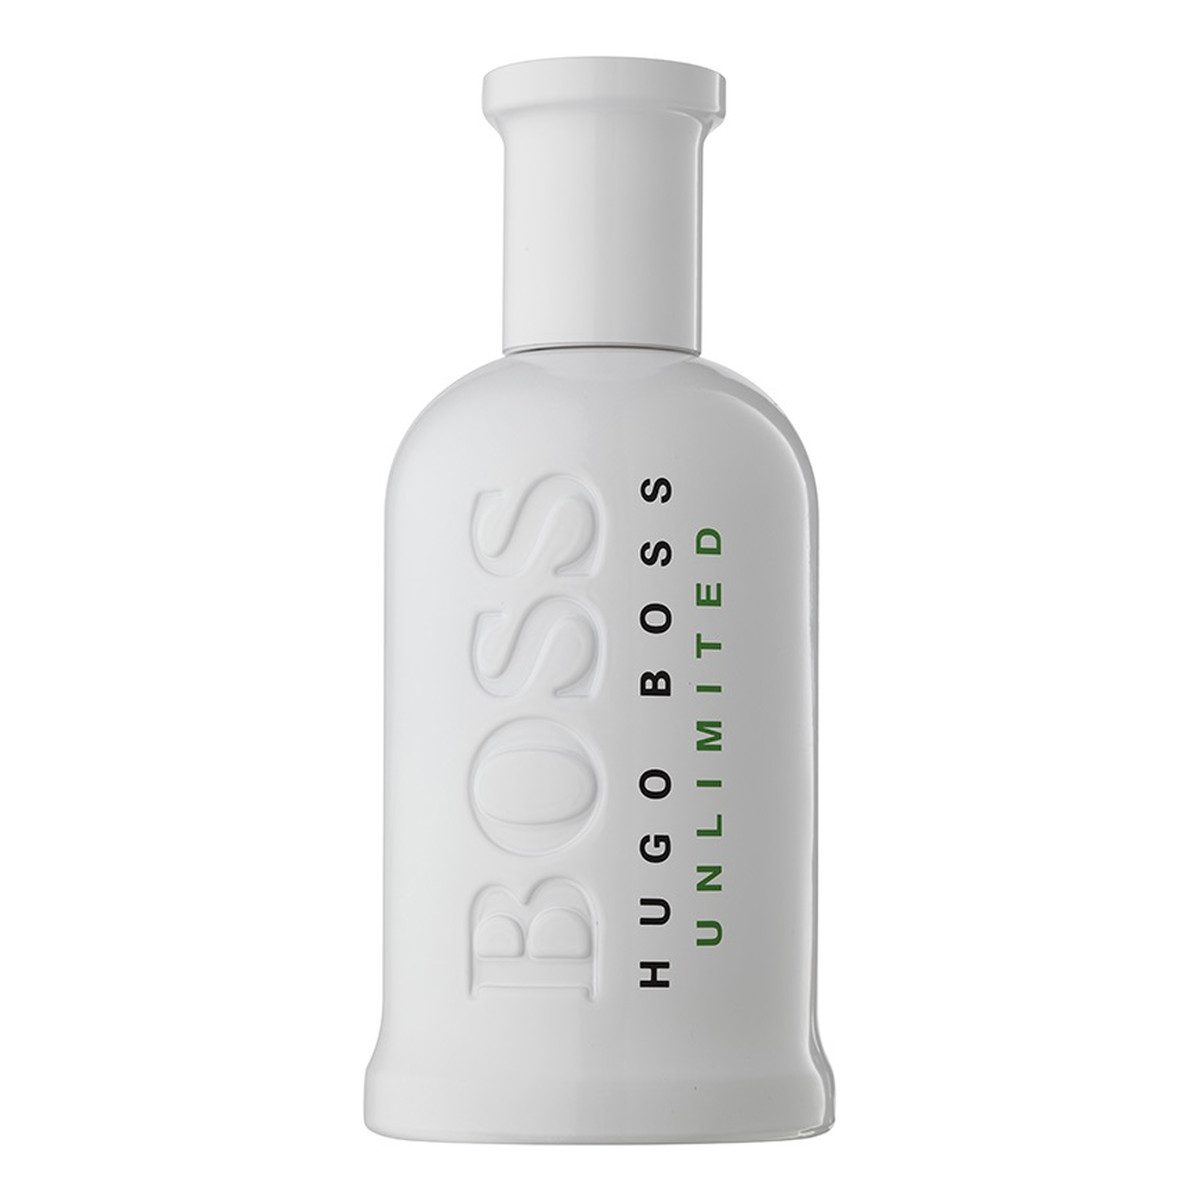 Hugo Boss Bottled Unlimited Woda toaletowa spray 200ml